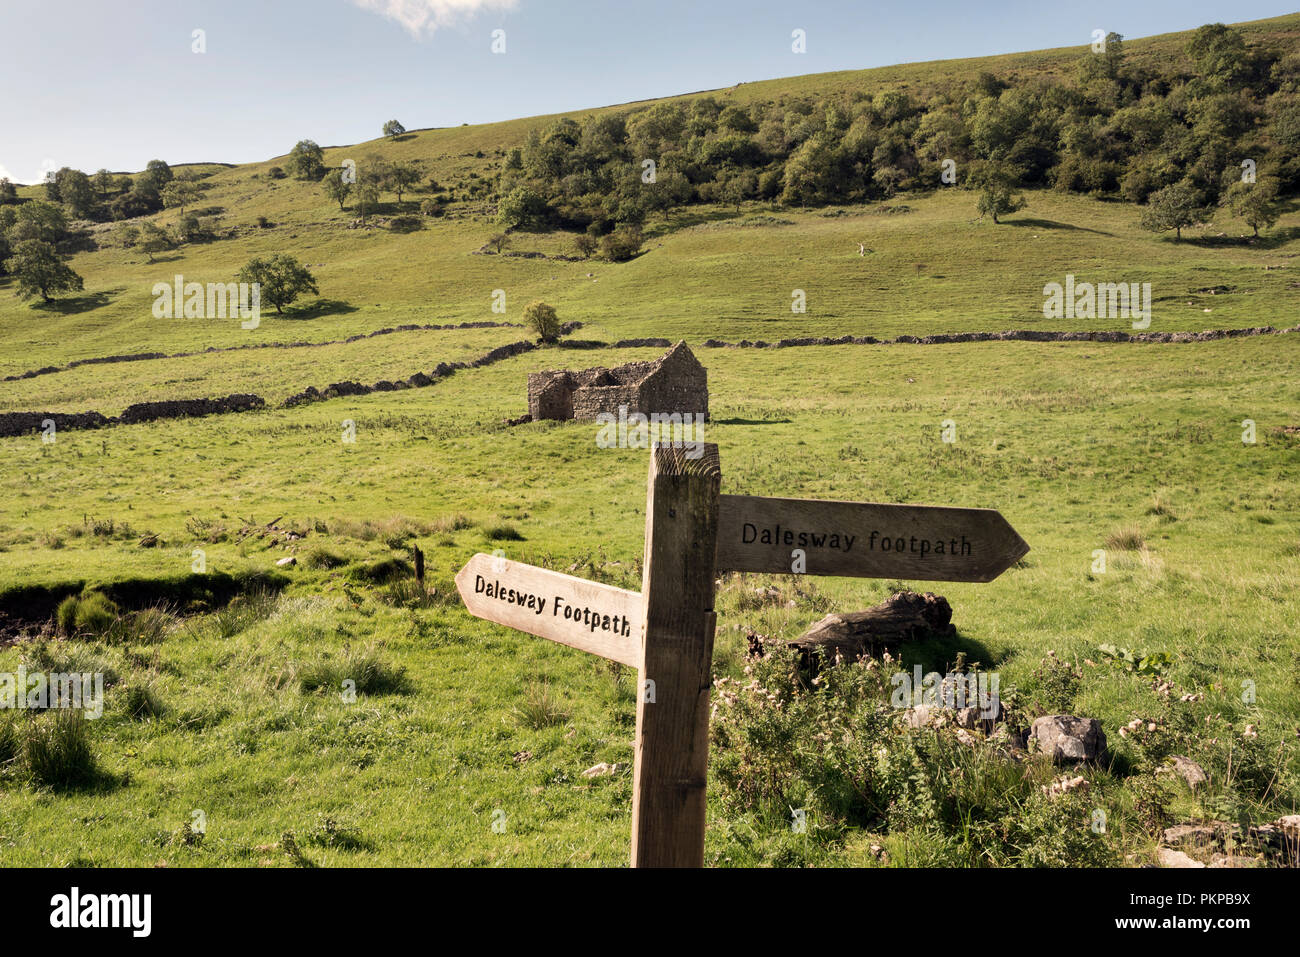 'L'Dales modo' lunga distanza sentiero vicino Starbotton, Wharfedale, nel Yorkshire Dales National Park, Regno Unito. Foto Stock